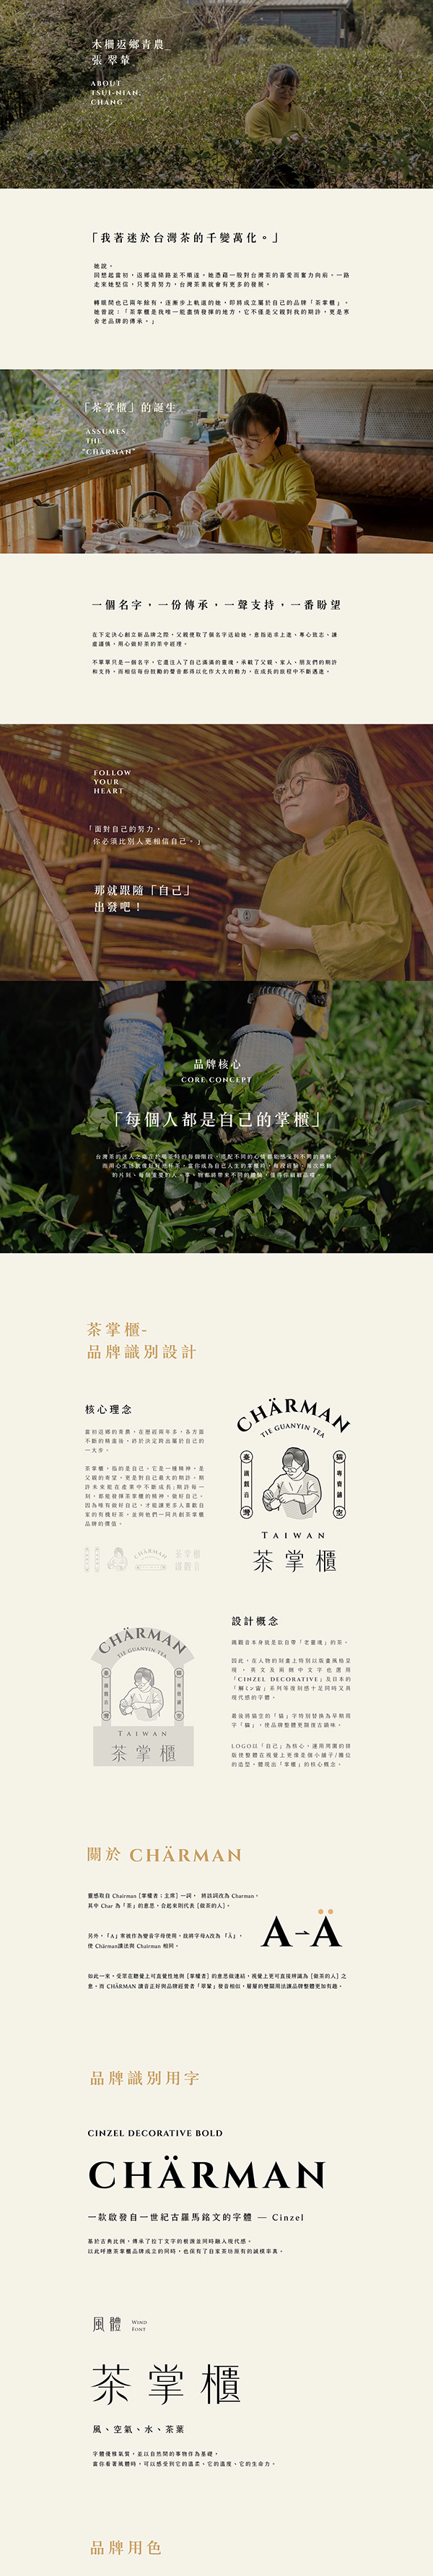 品牌識別＿茶掌櫃 鐵觀音專賣舖 Chärman Tieguanyin Tea